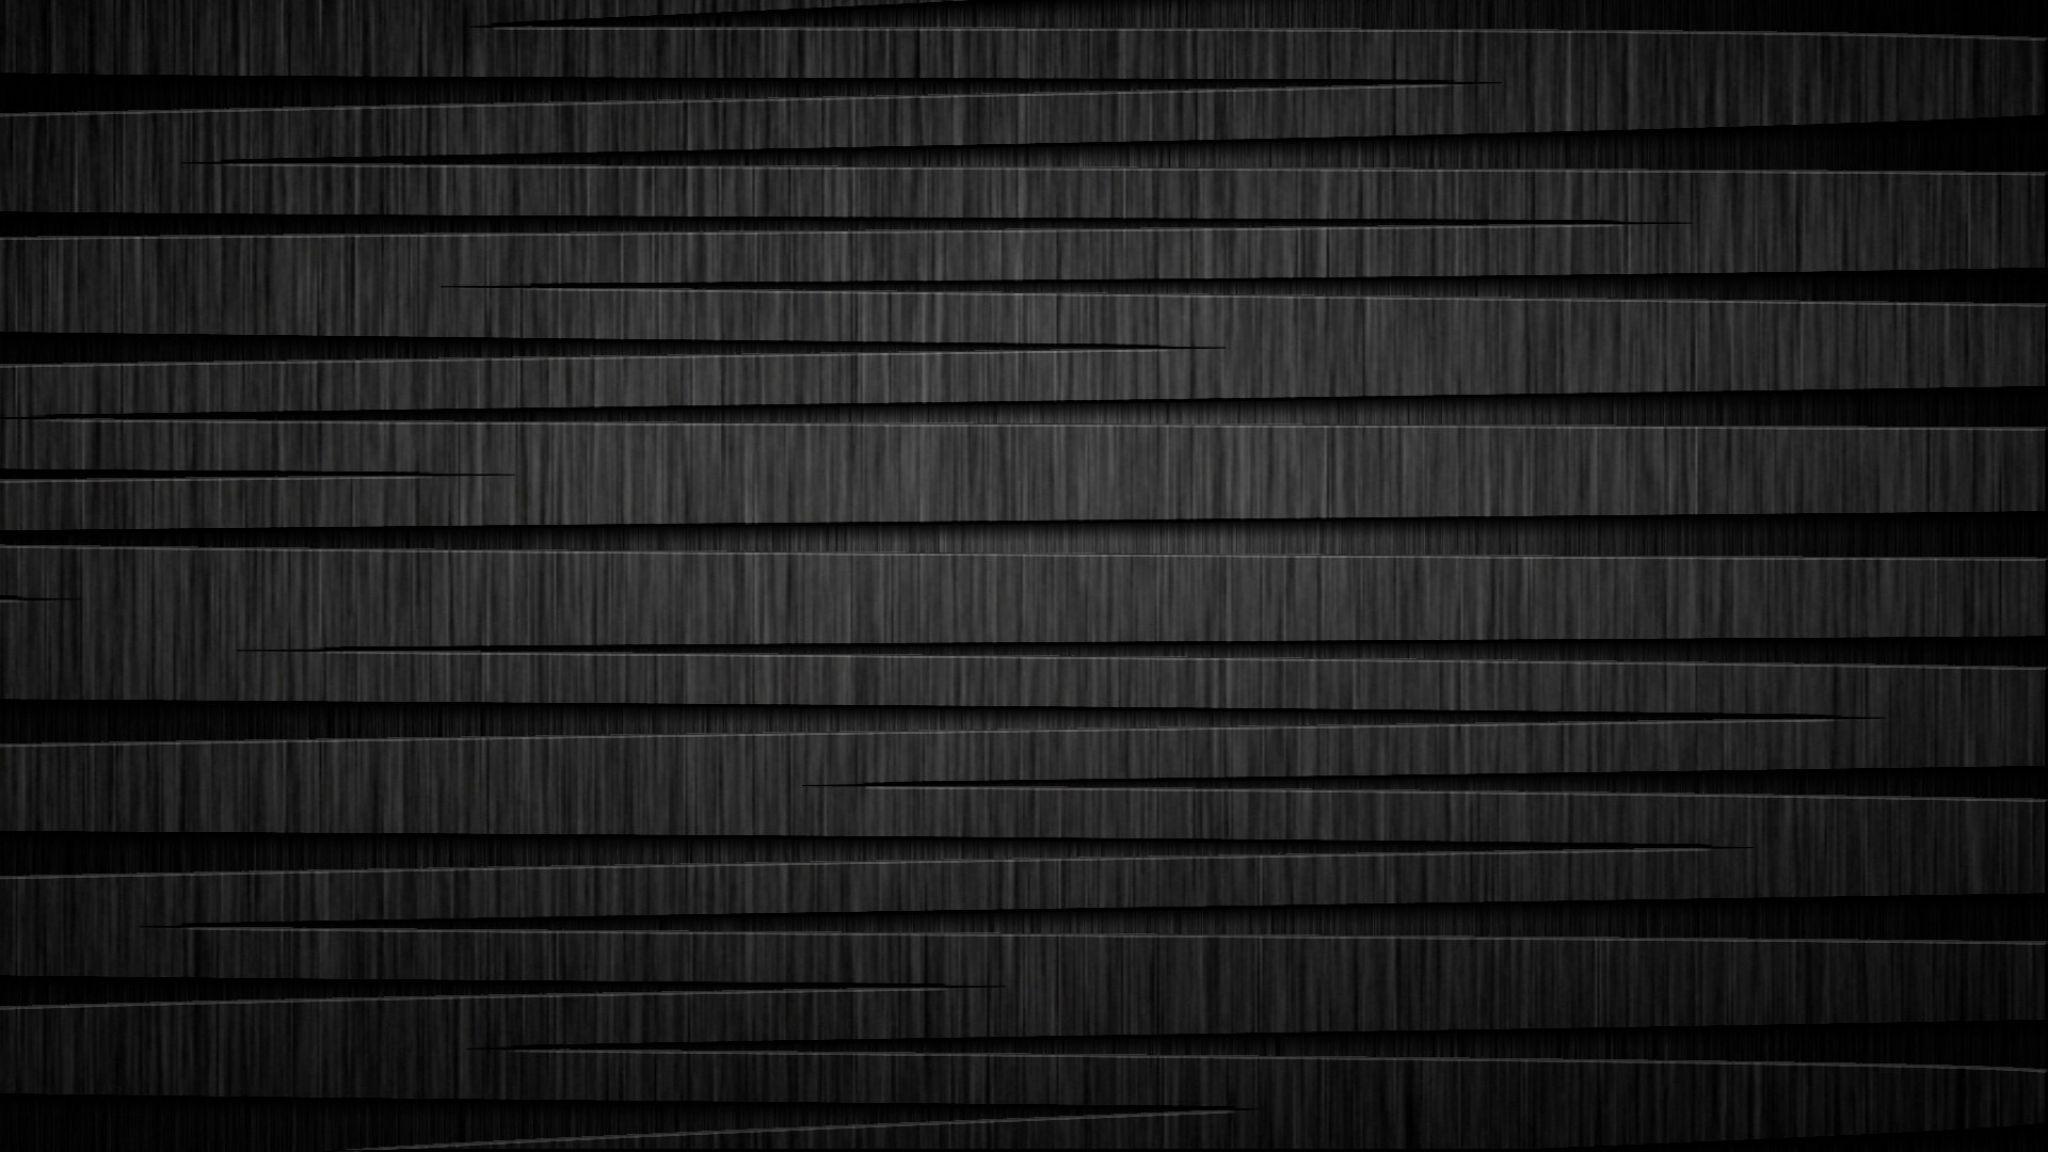 Hình nền đen 2048 x 1152 trên WallpaperDog: Cùng với những hình nền đẹp và đa dạng khác, WallpaperDog mang đến những bức tranh đen đầy sắc thái nhưng vẫn rất ấn tượng với độ phân giải tuyệt vời 2048x